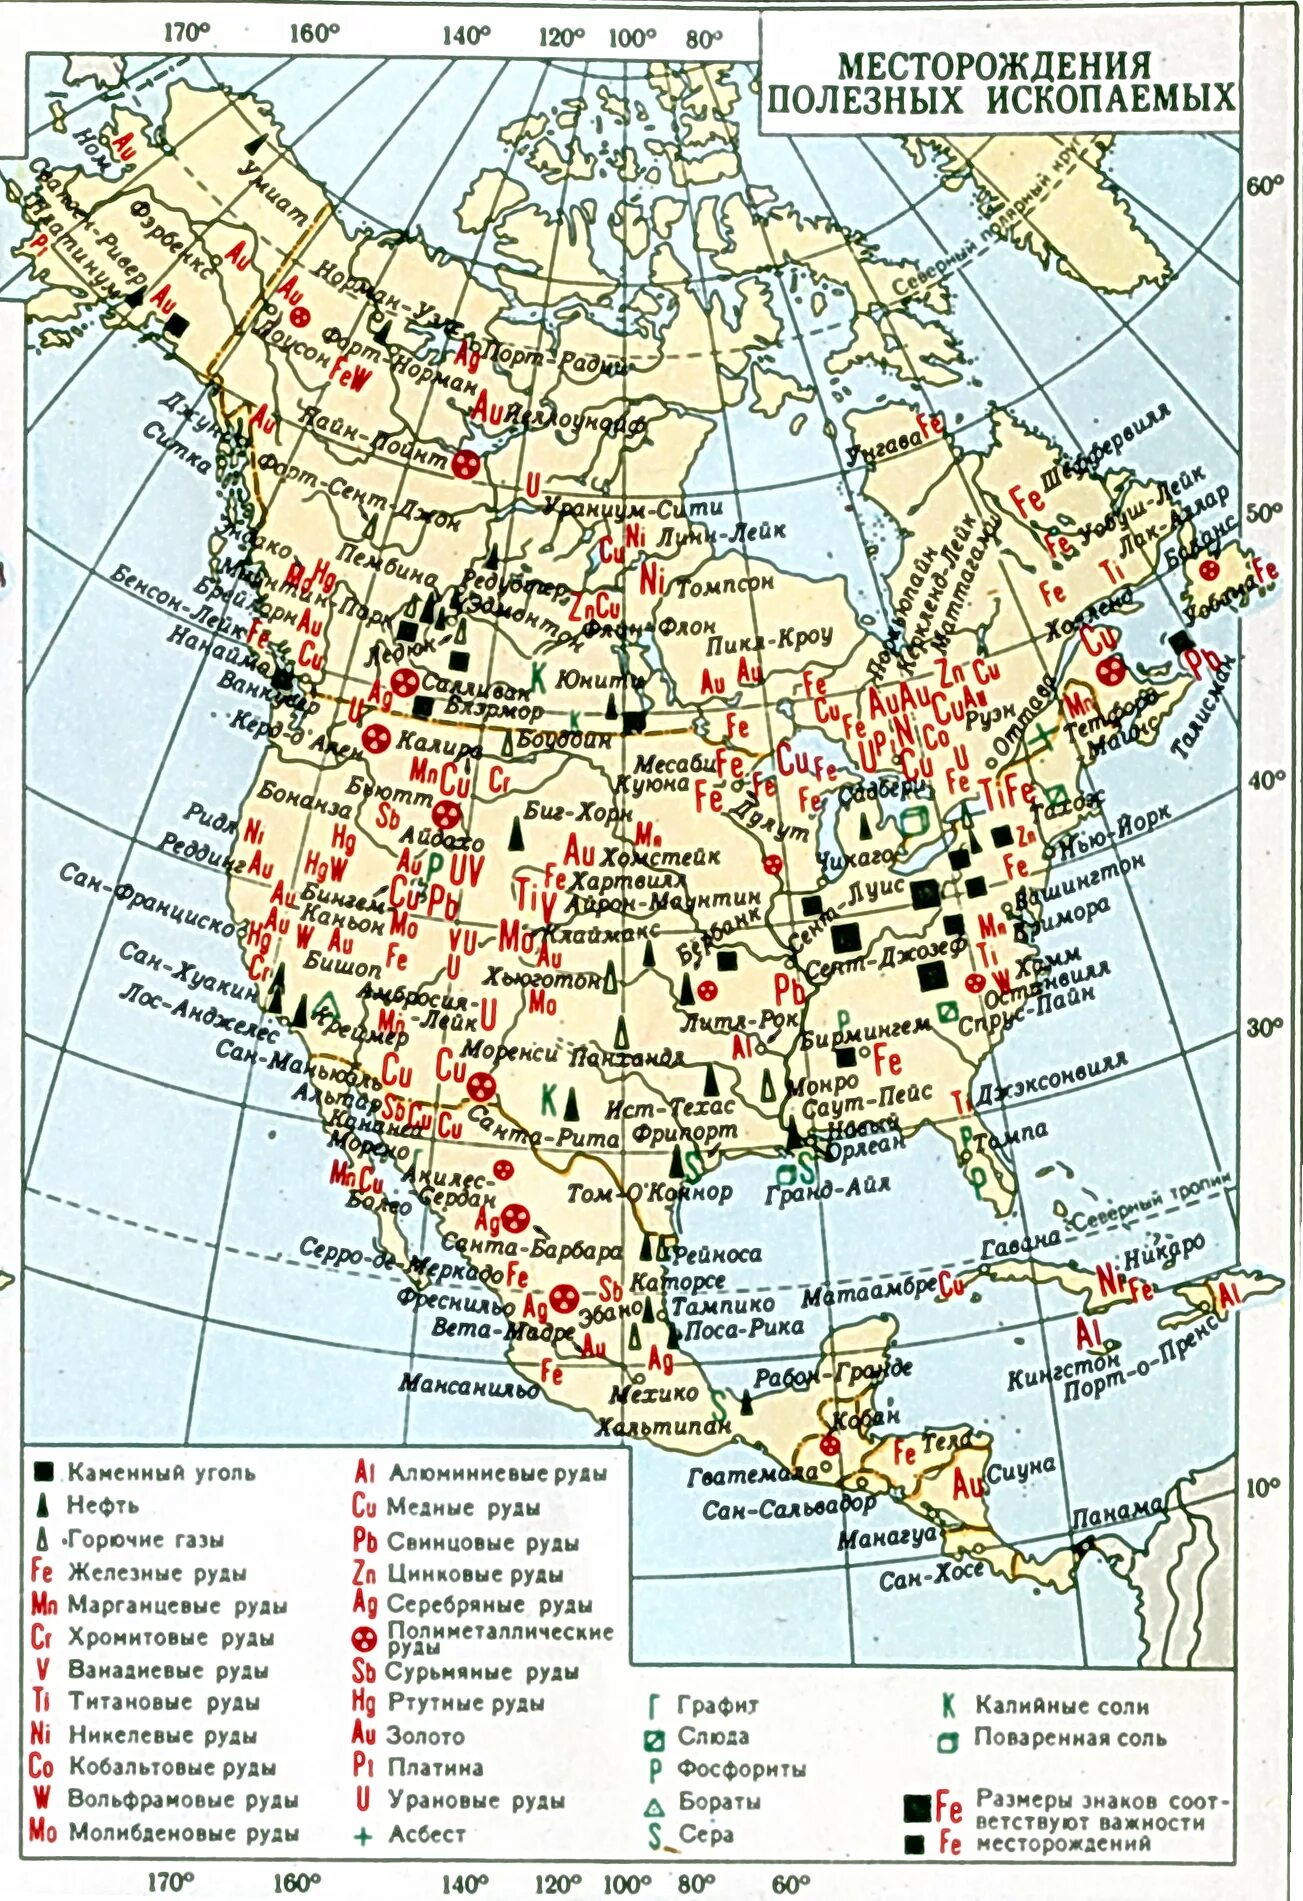 Какими ископаемыми богата северная америка. Минеральные ресурсы США карта. Карта Северной Америки месторождения полезных ископаемых. Полезные ископаемые США на карте. Месторождения полезных ископаемых Северной Америки.